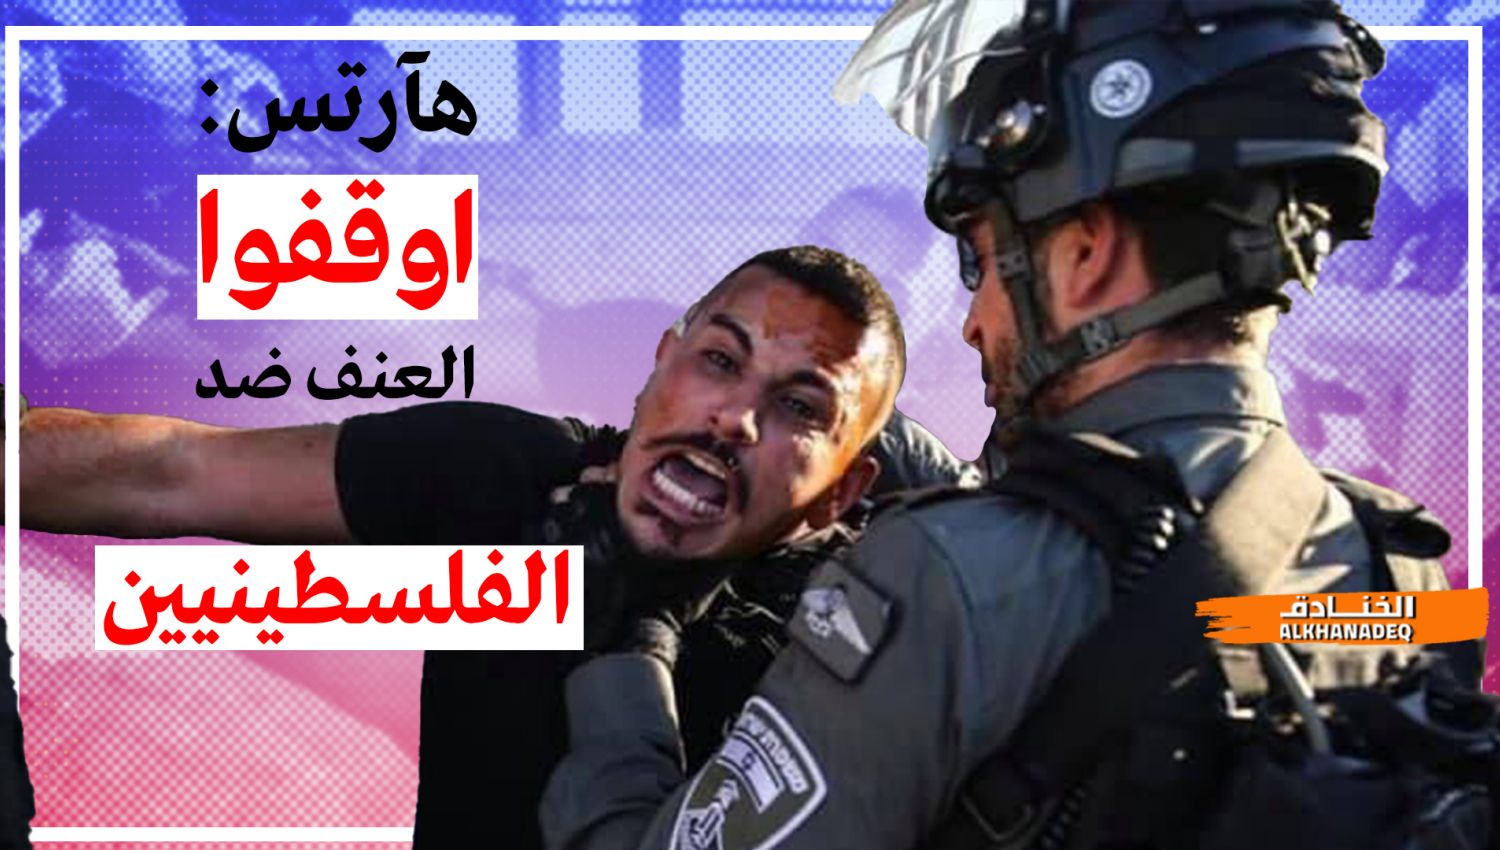 الاعلام العبري يعترف: شرطة الاحتلال تمارس العنف بحق الفلسطينيين